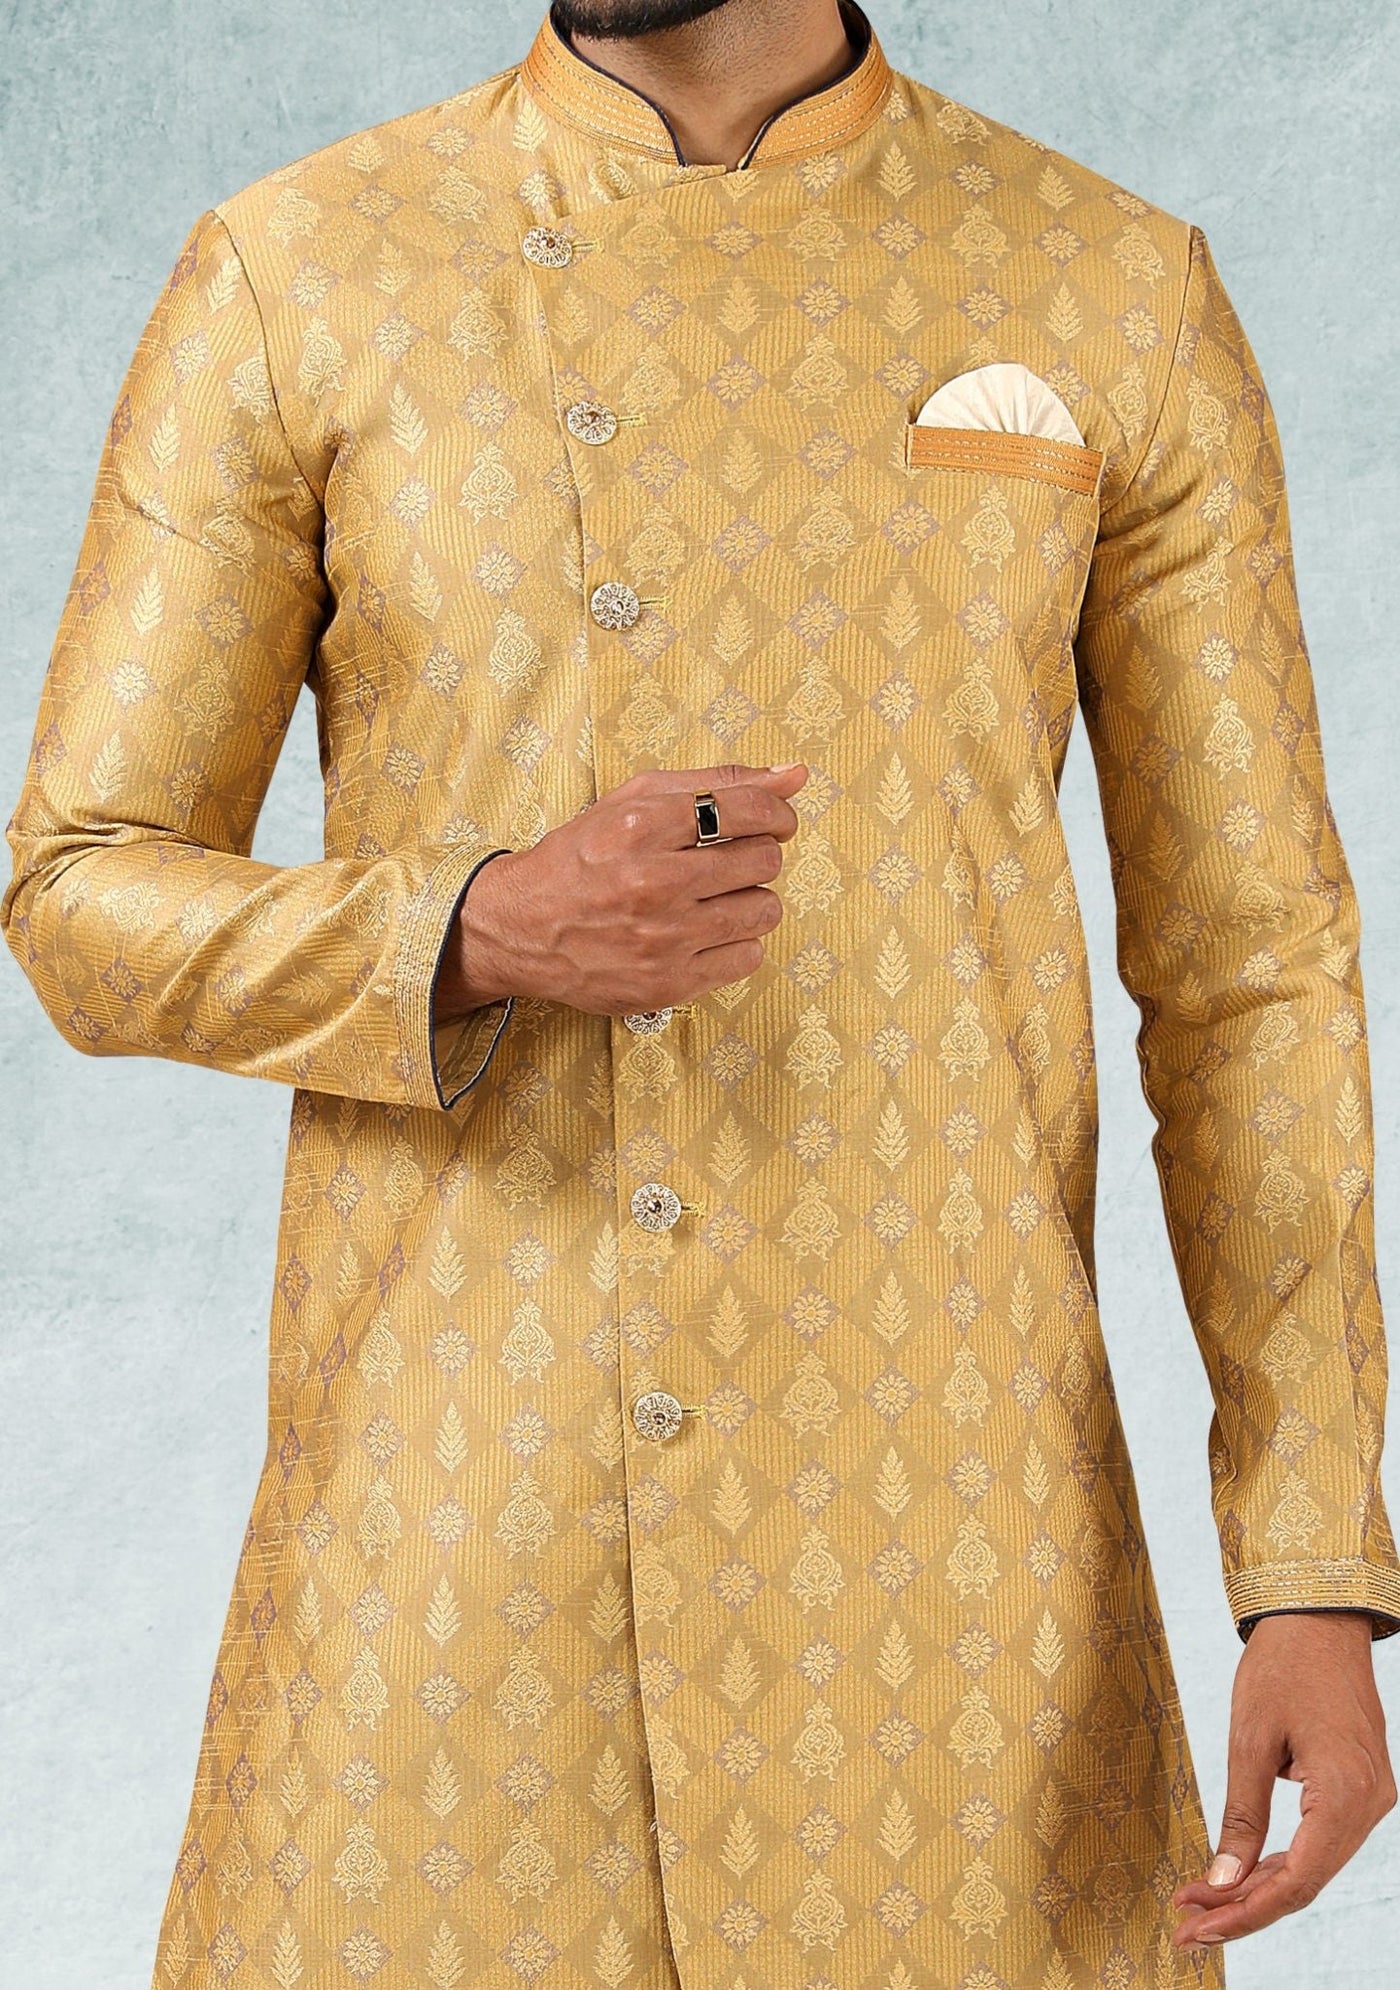 Men's Indo Western Party Wear Sherwani Suit - db20664